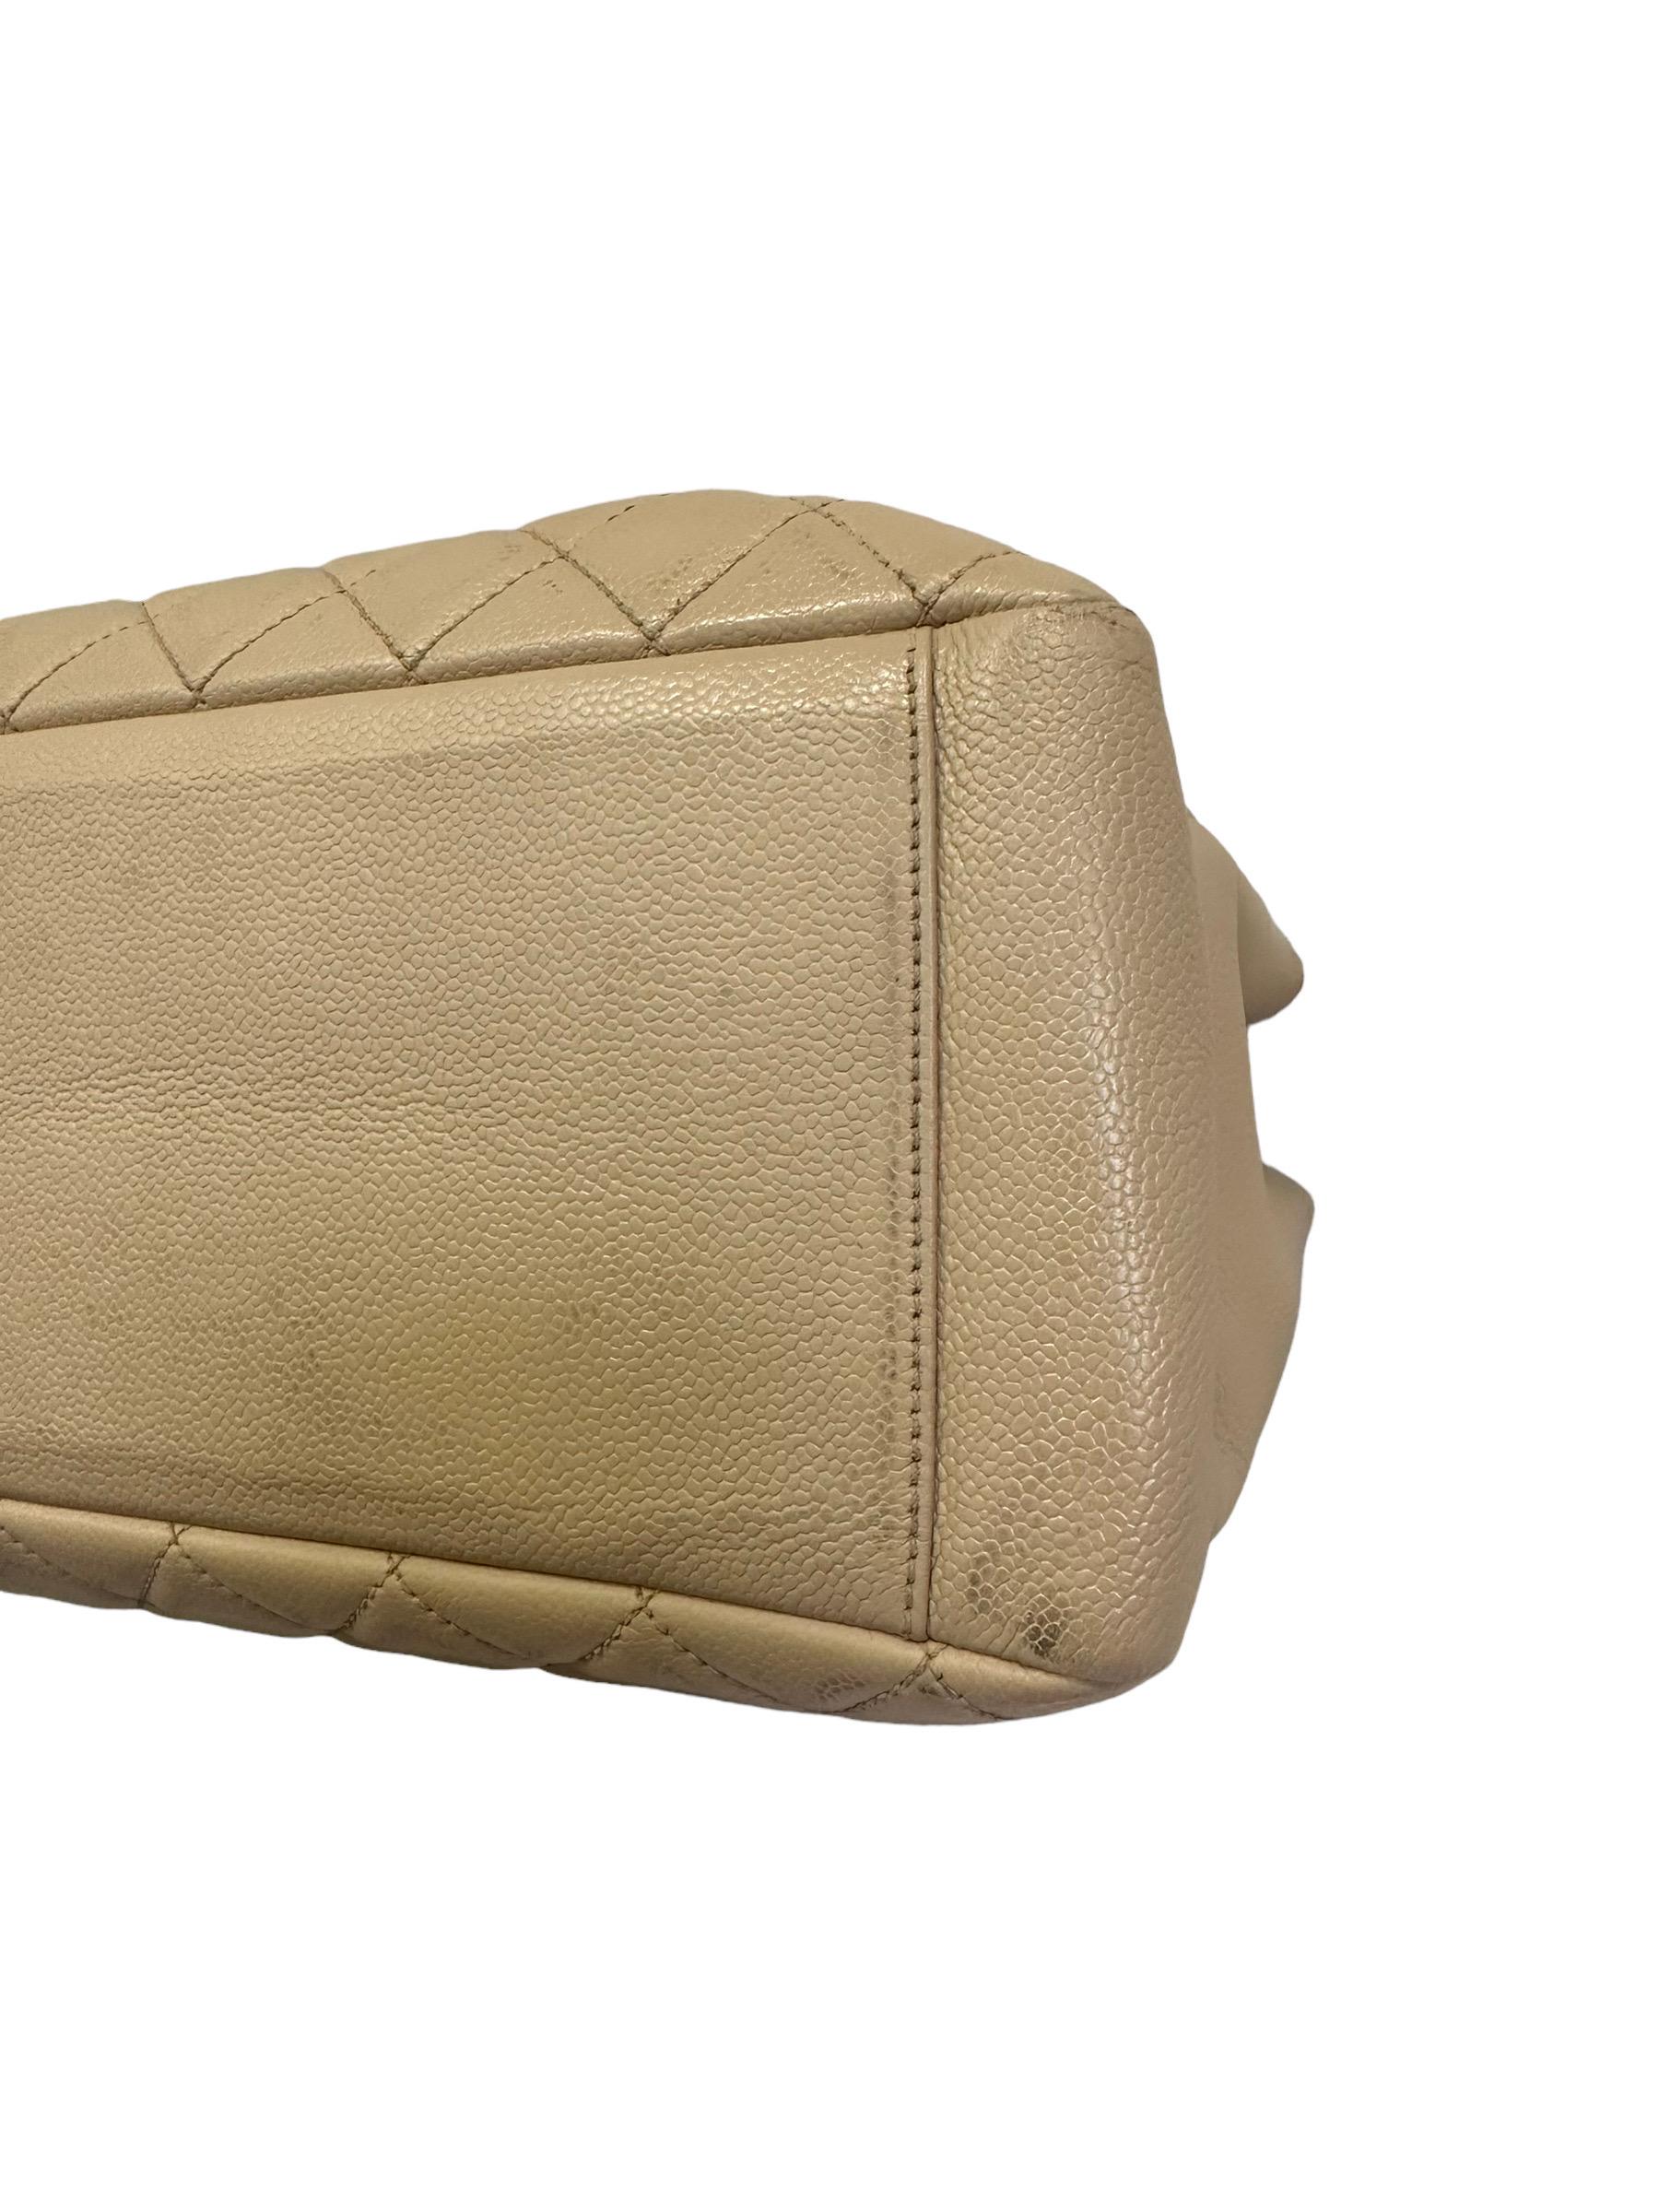 2014 Chanel Beige Leather GST Shoulder Bag For Sale 6